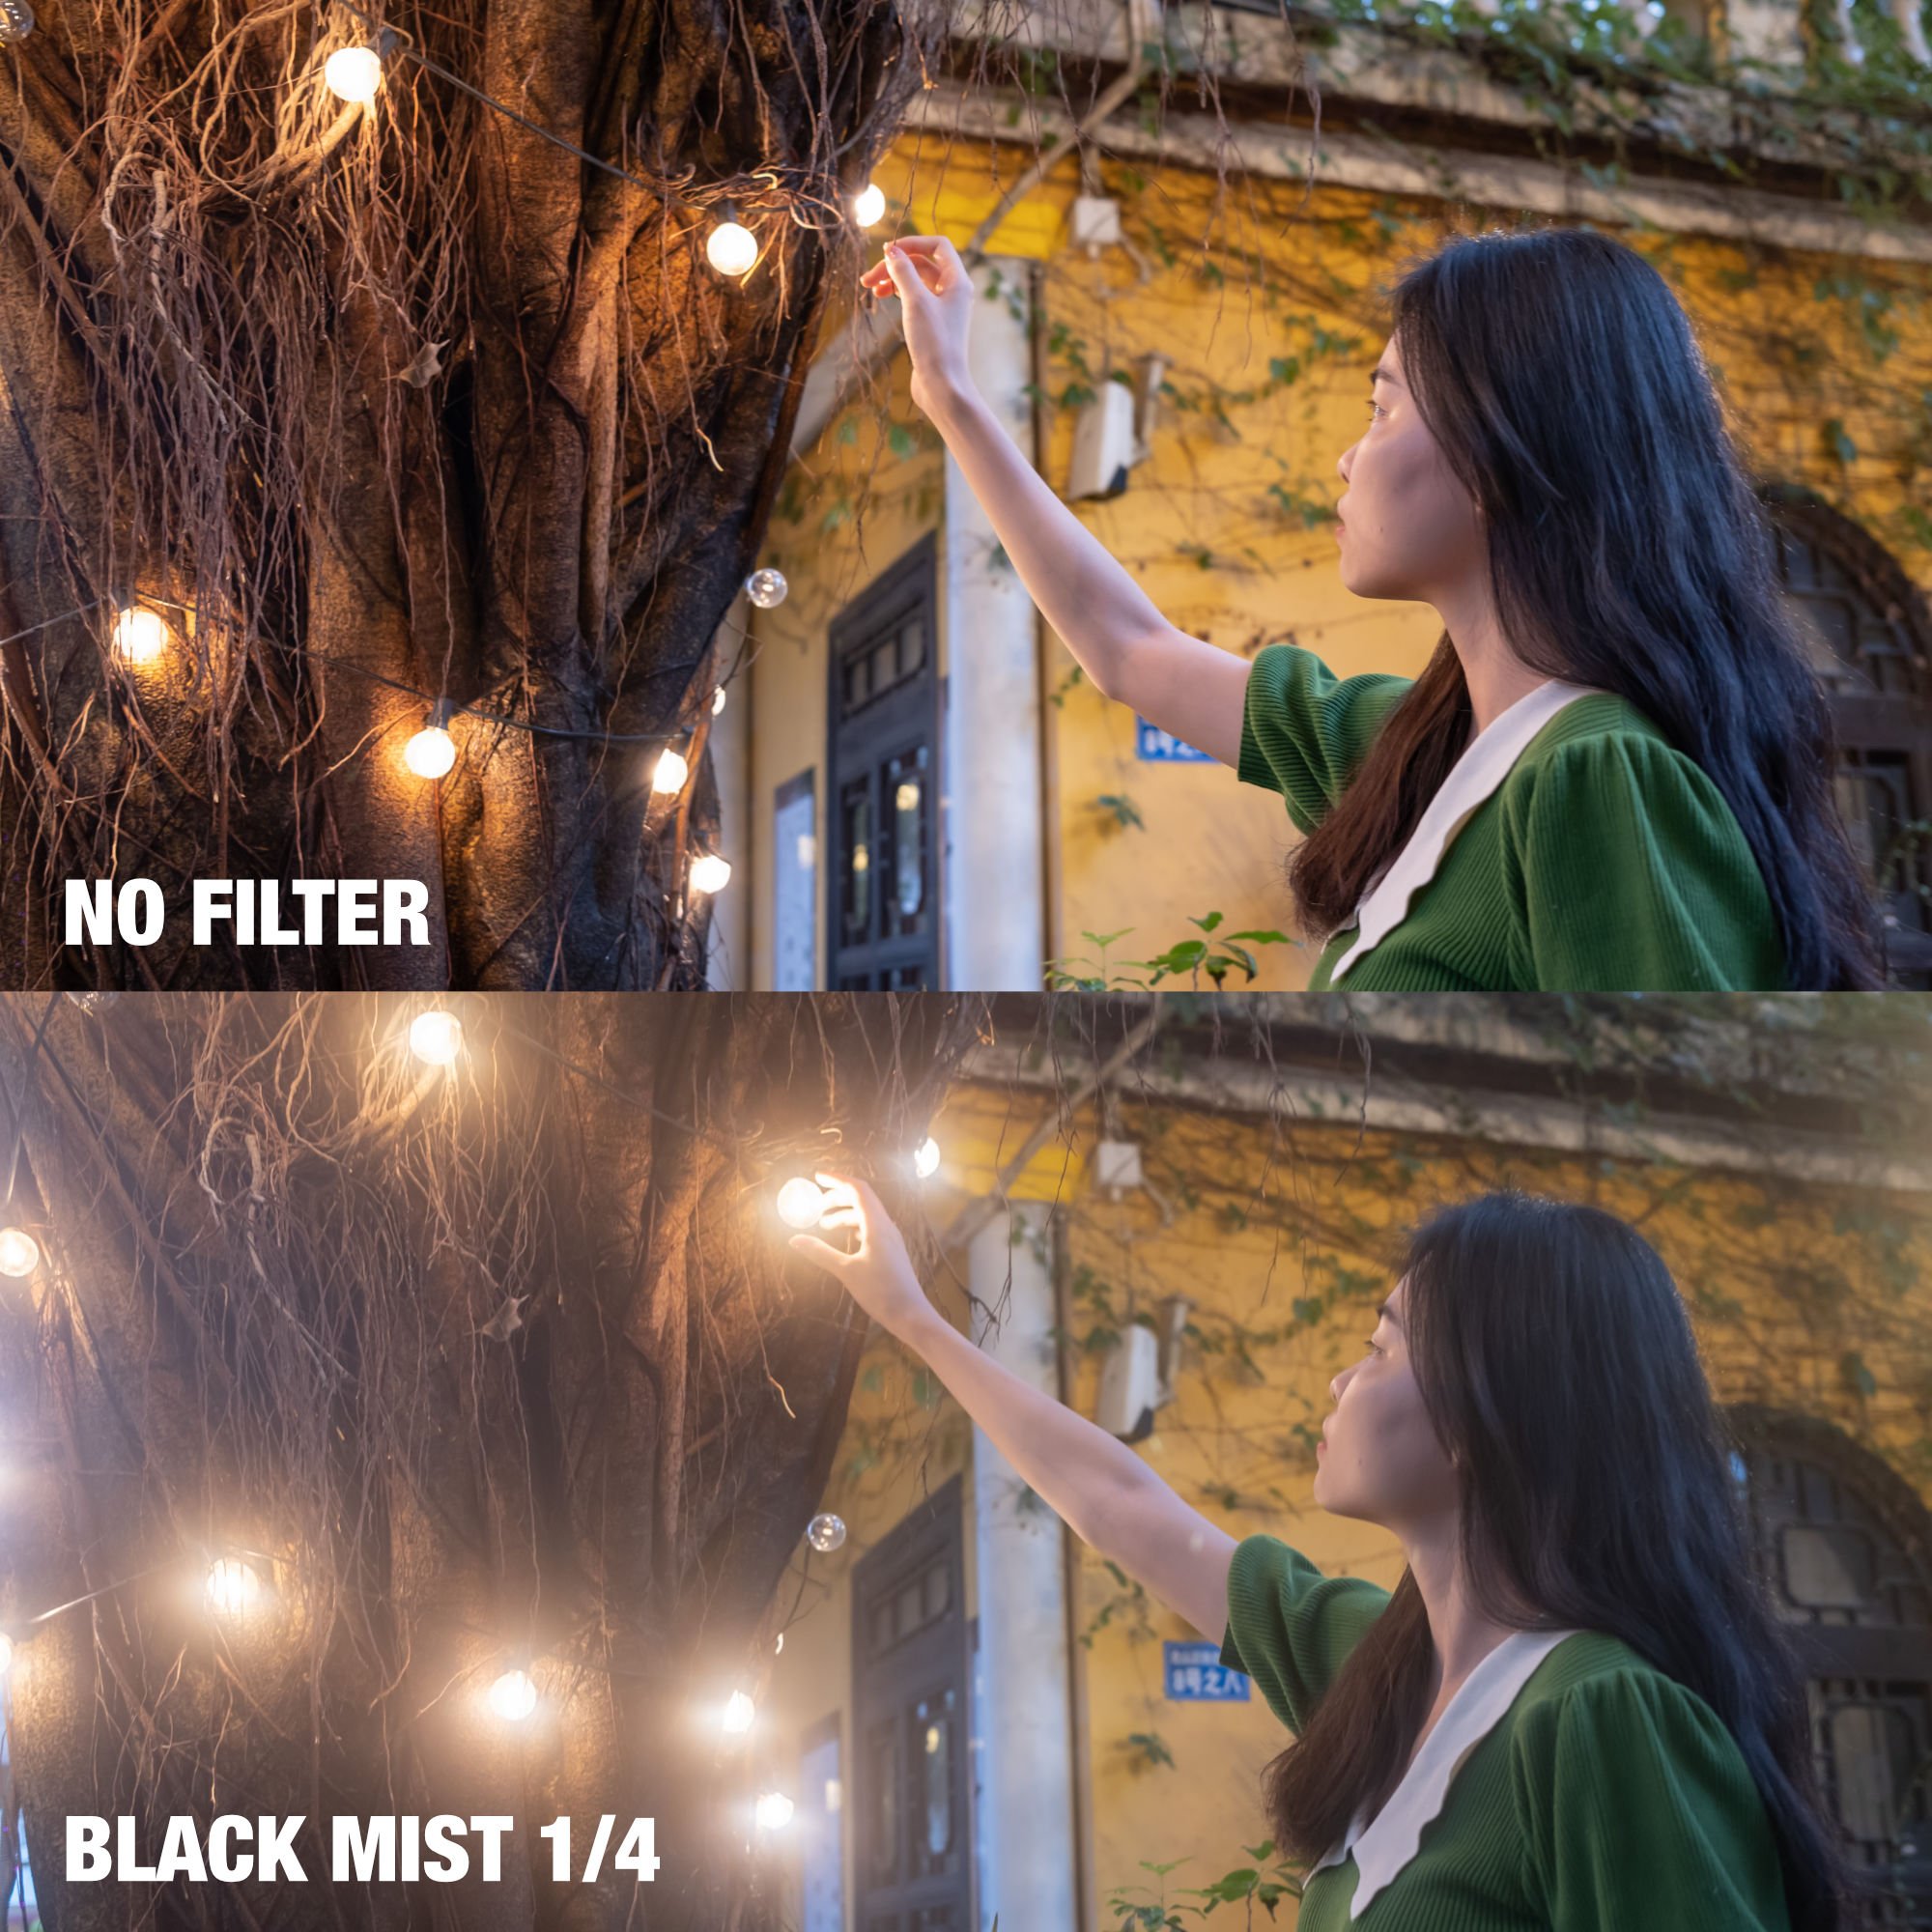 NiSi Black Mist 1_4 for Fujifilm X100 Series - Sample 1.jpg